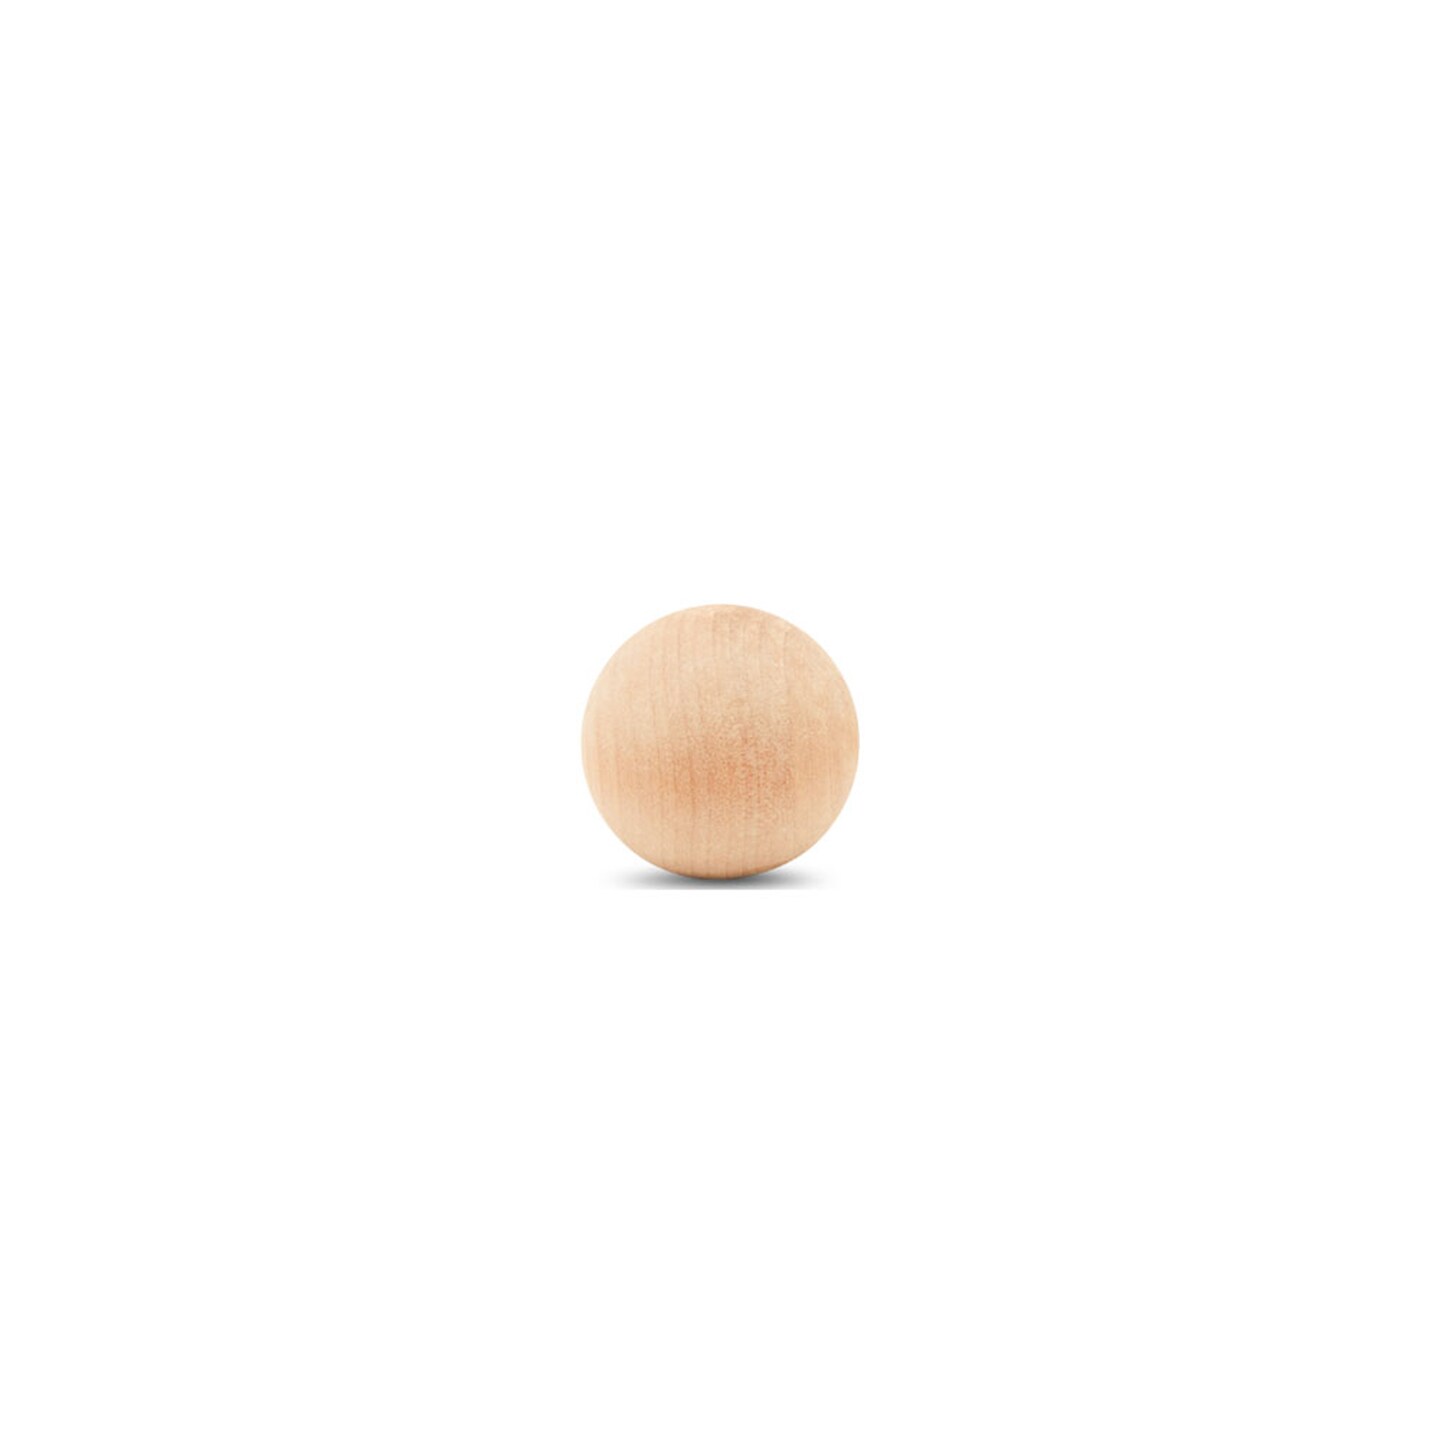 Wooden Balls, Assorted Unfinished, Round, Birch Hardwood Craft